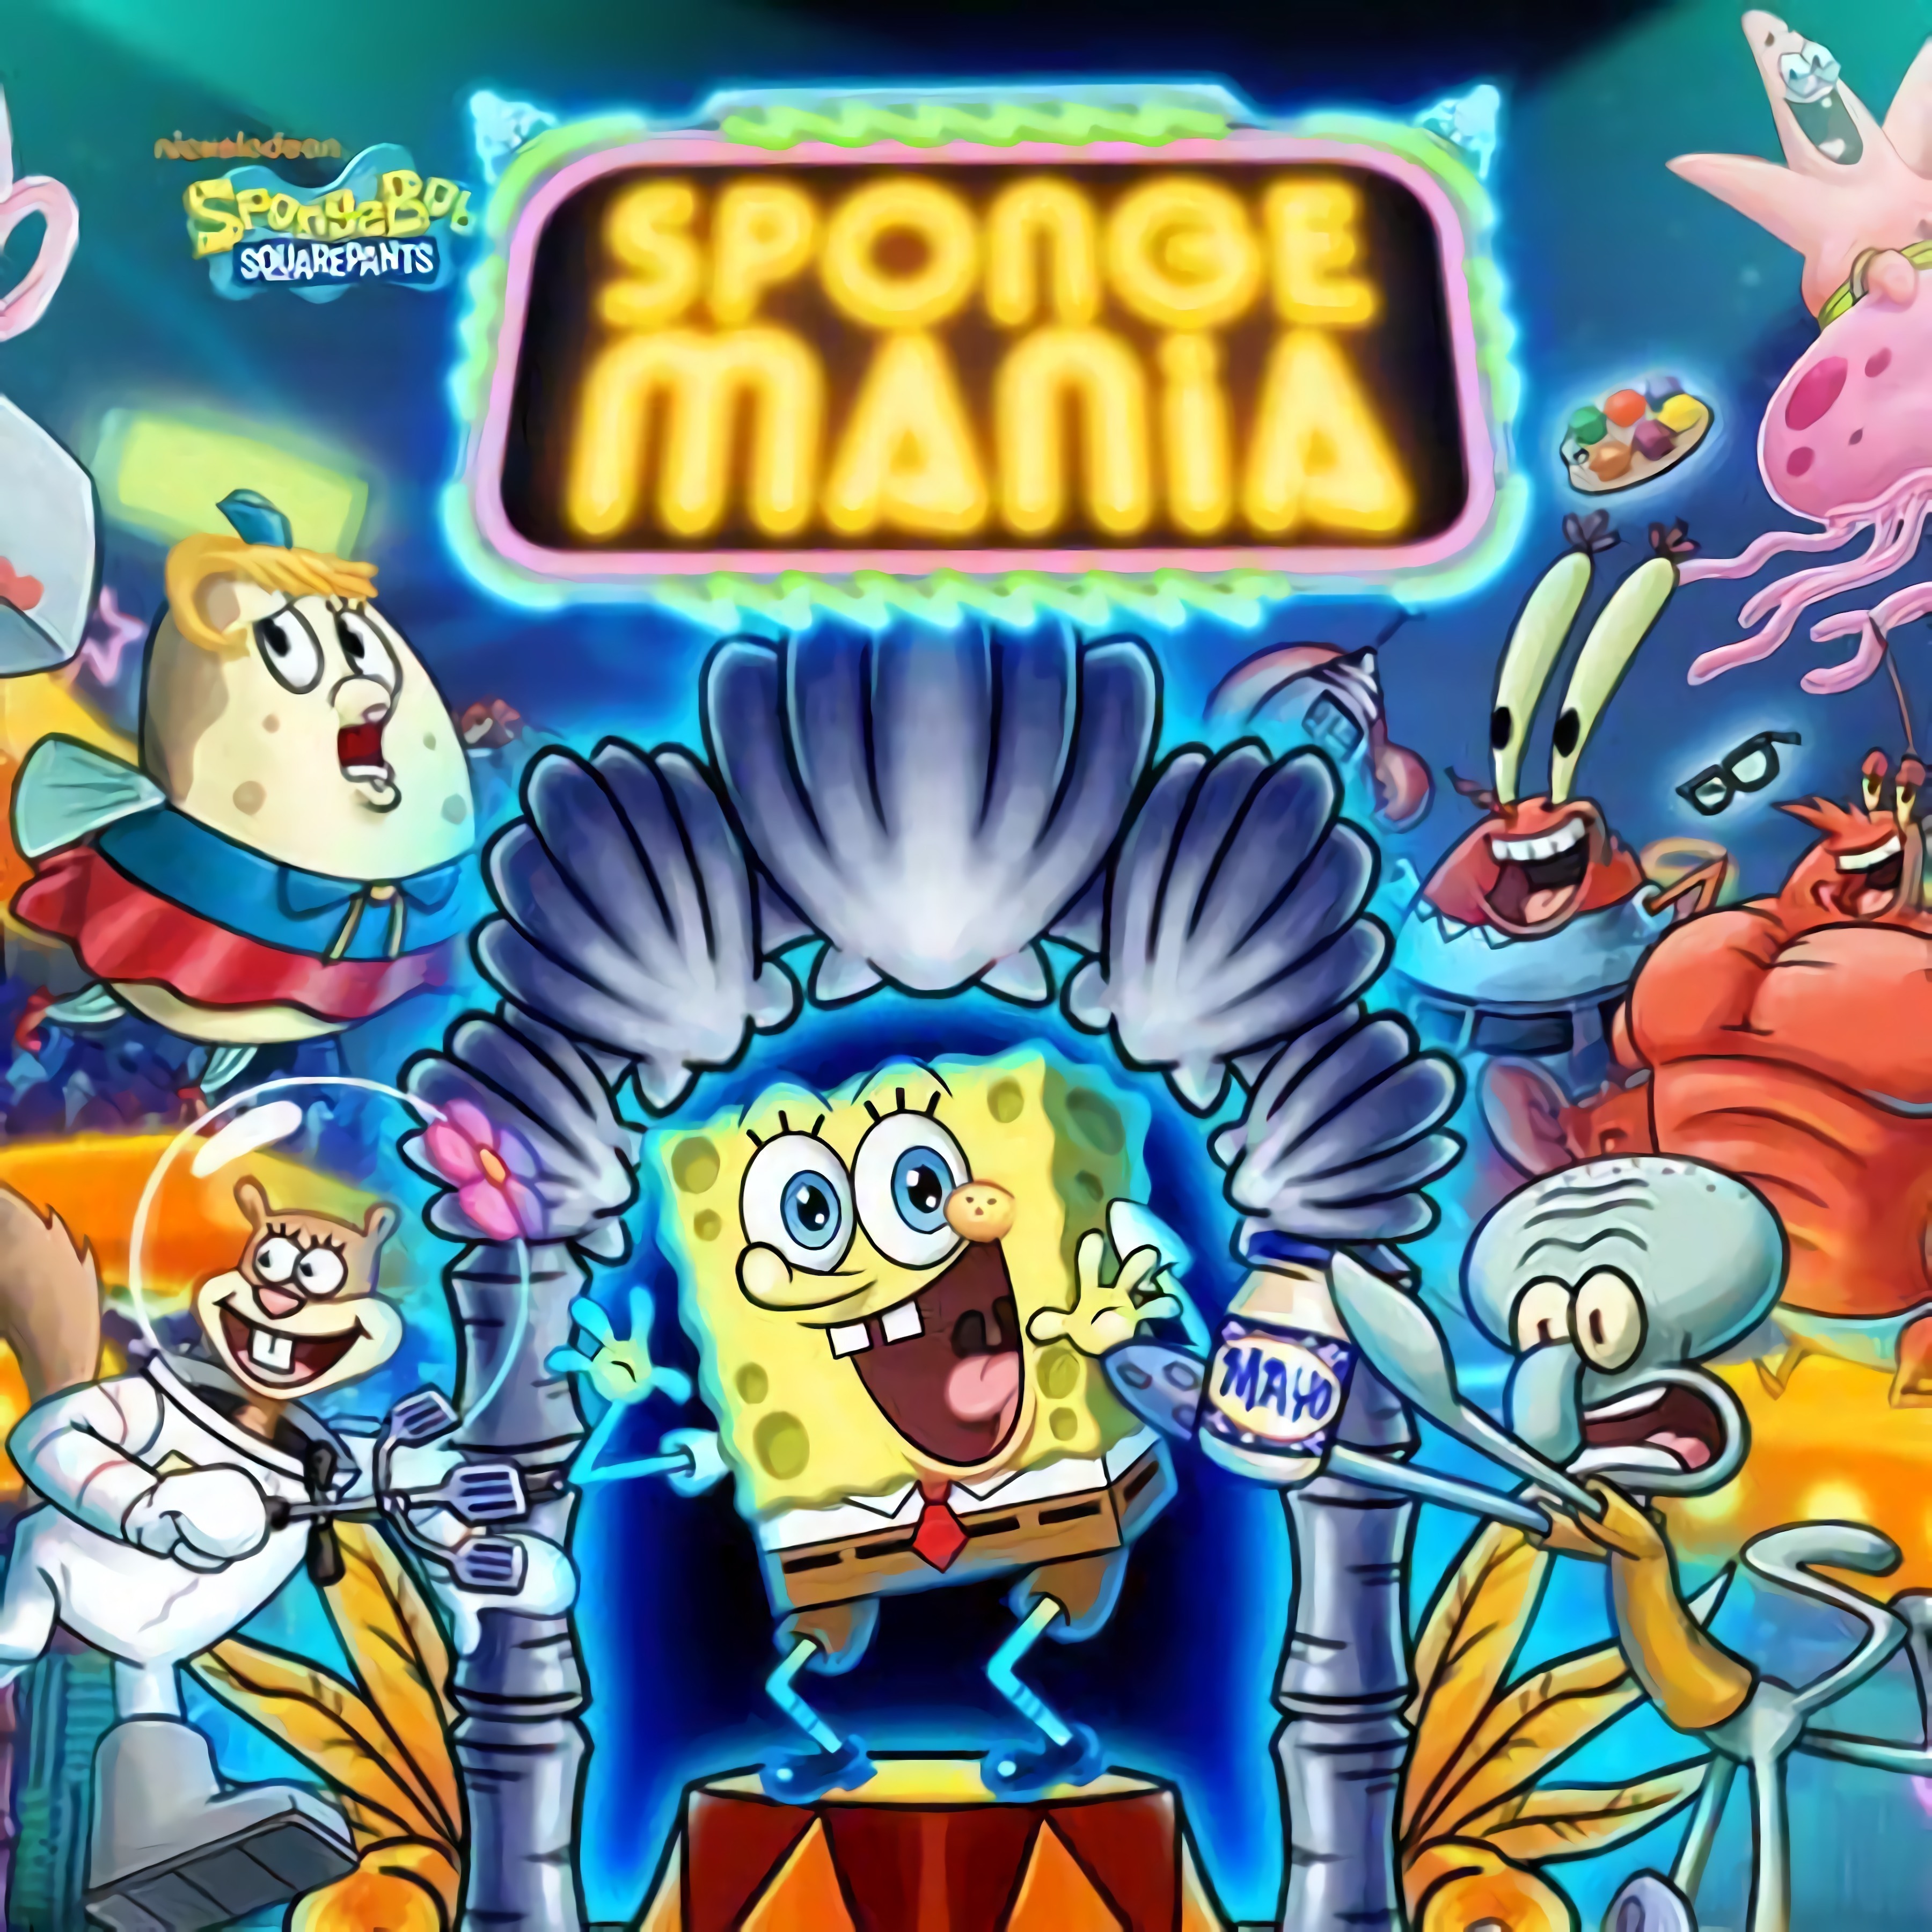 Spongebob Games Play Online New Spongebob Games on Desura